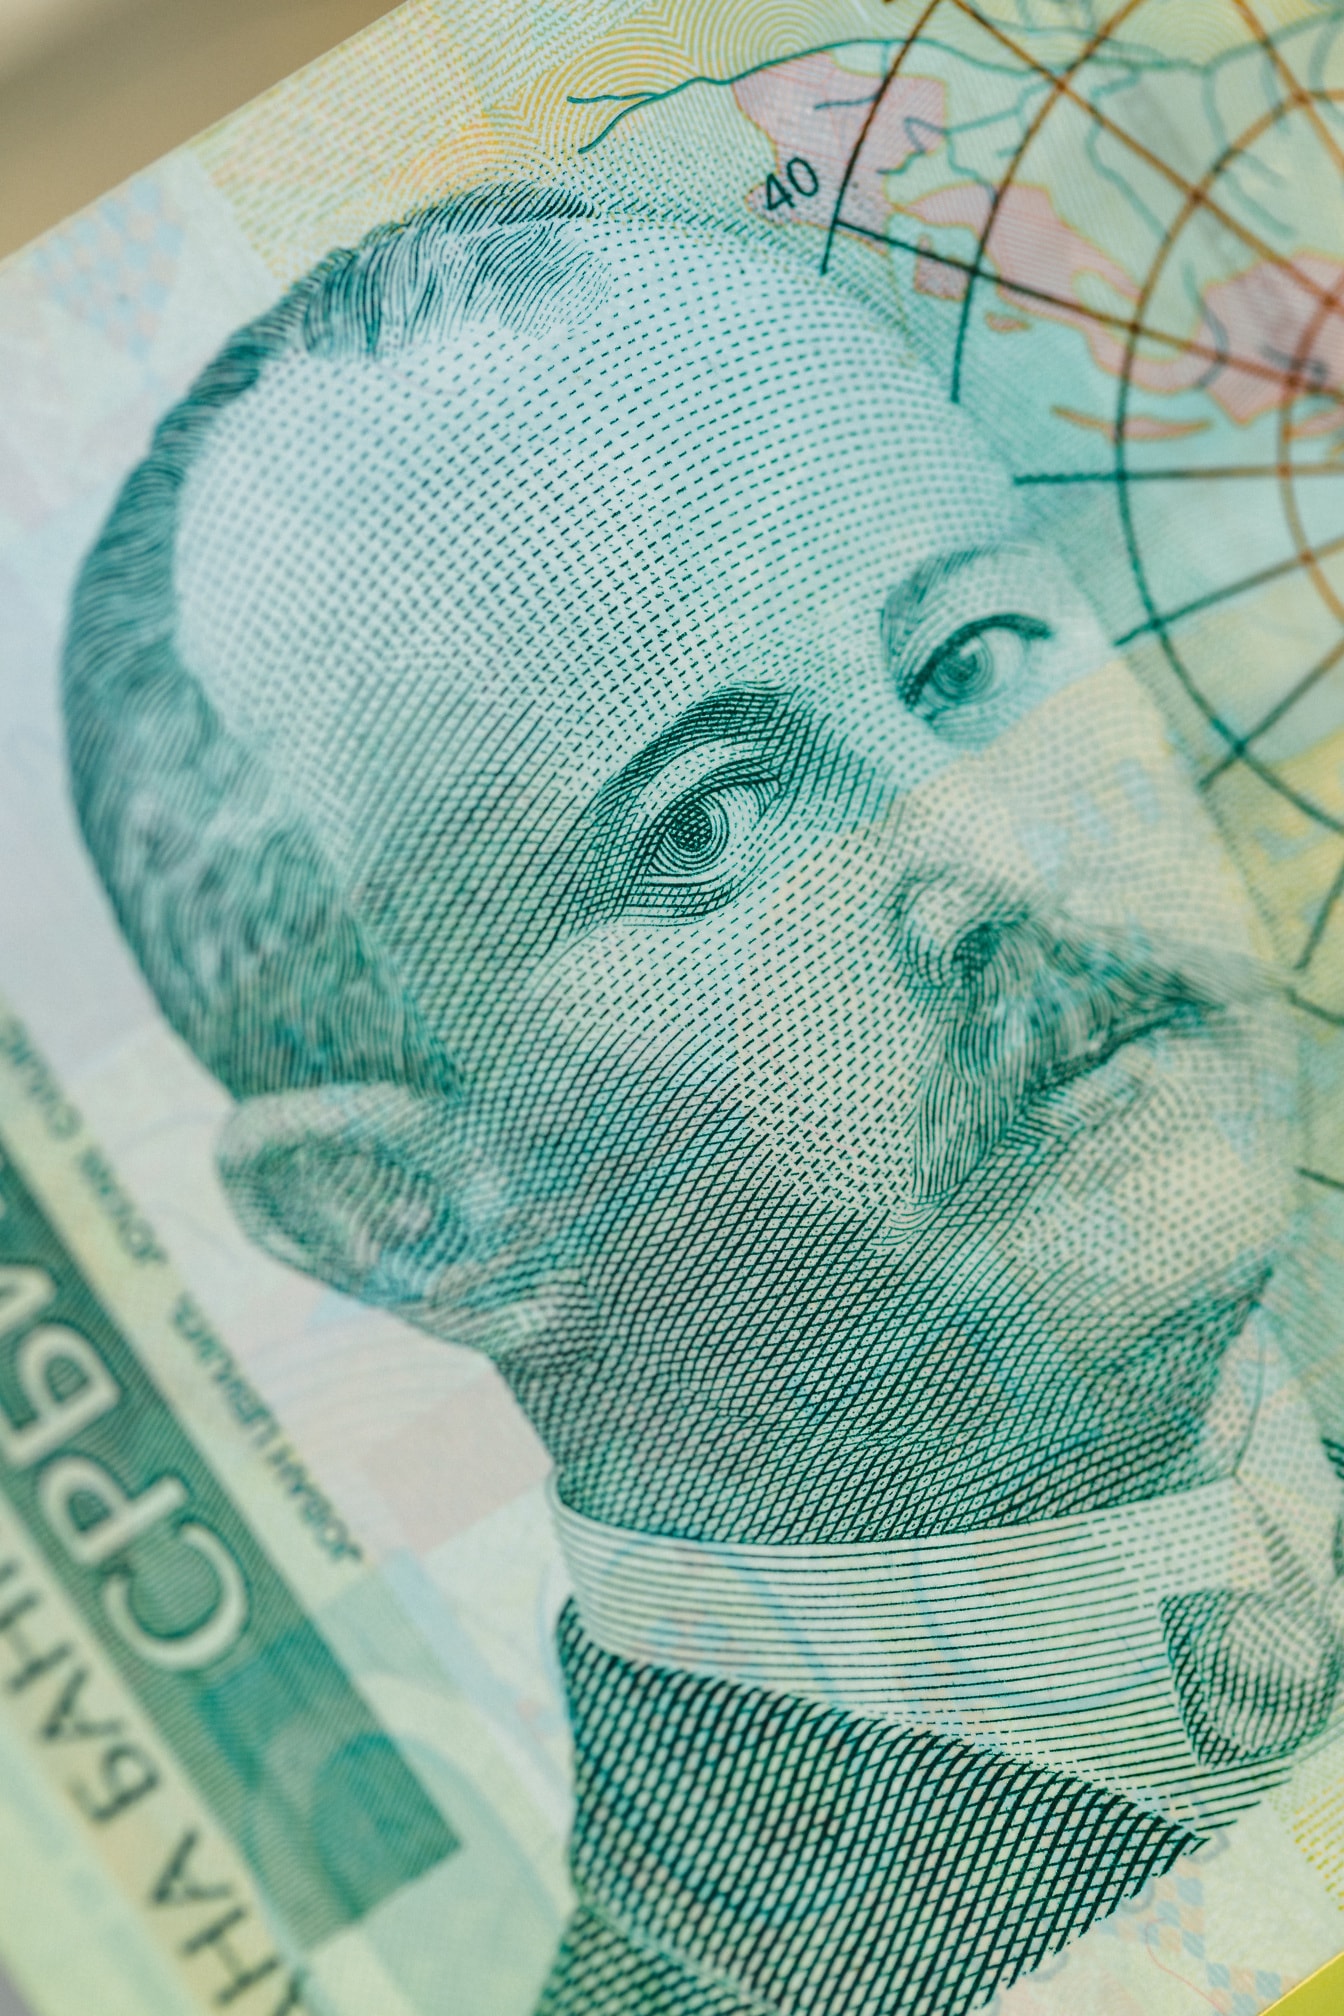 塞尔维亚第纳尔钞票的特写镜头与Jovana Cvijic的肖像